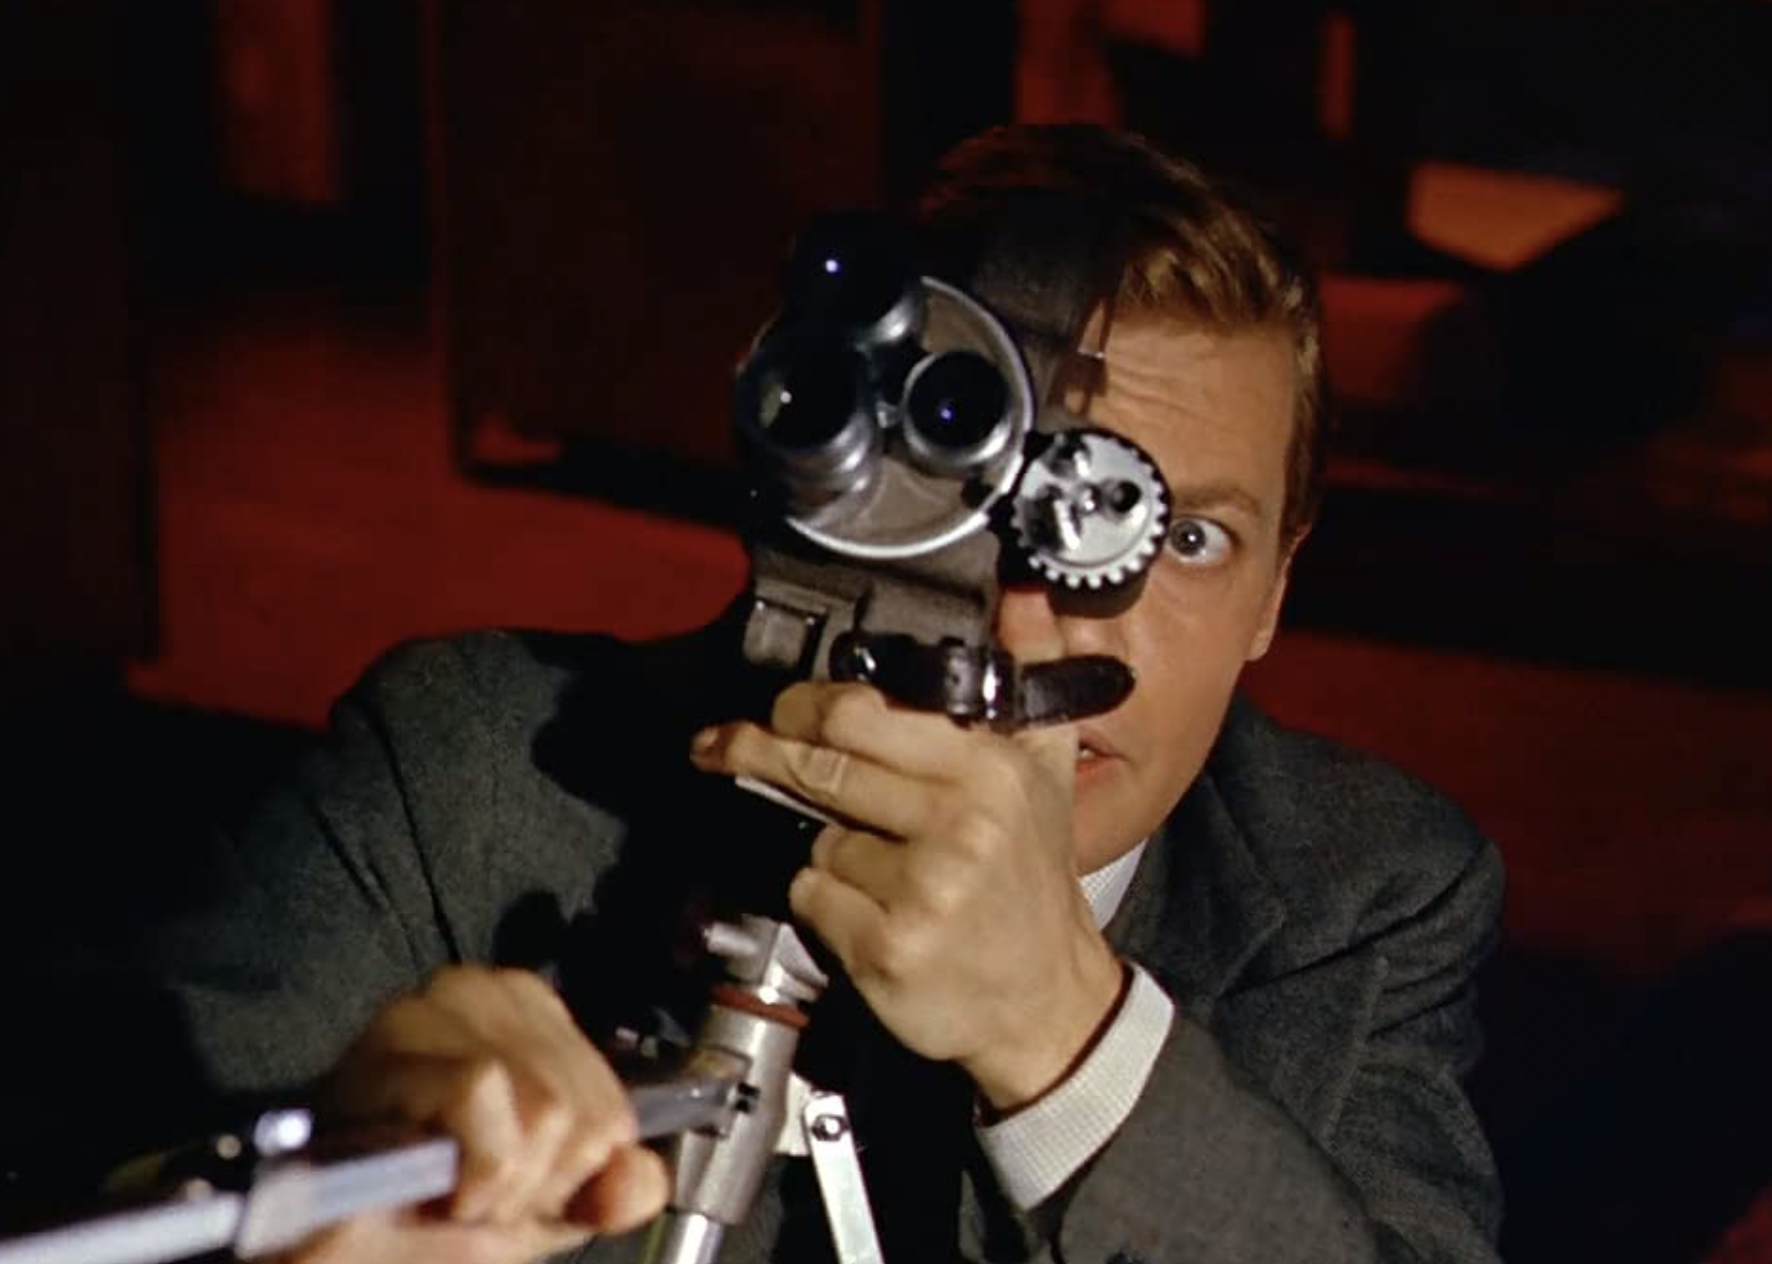 Karlheinz Böhm in "Peeping Tom".